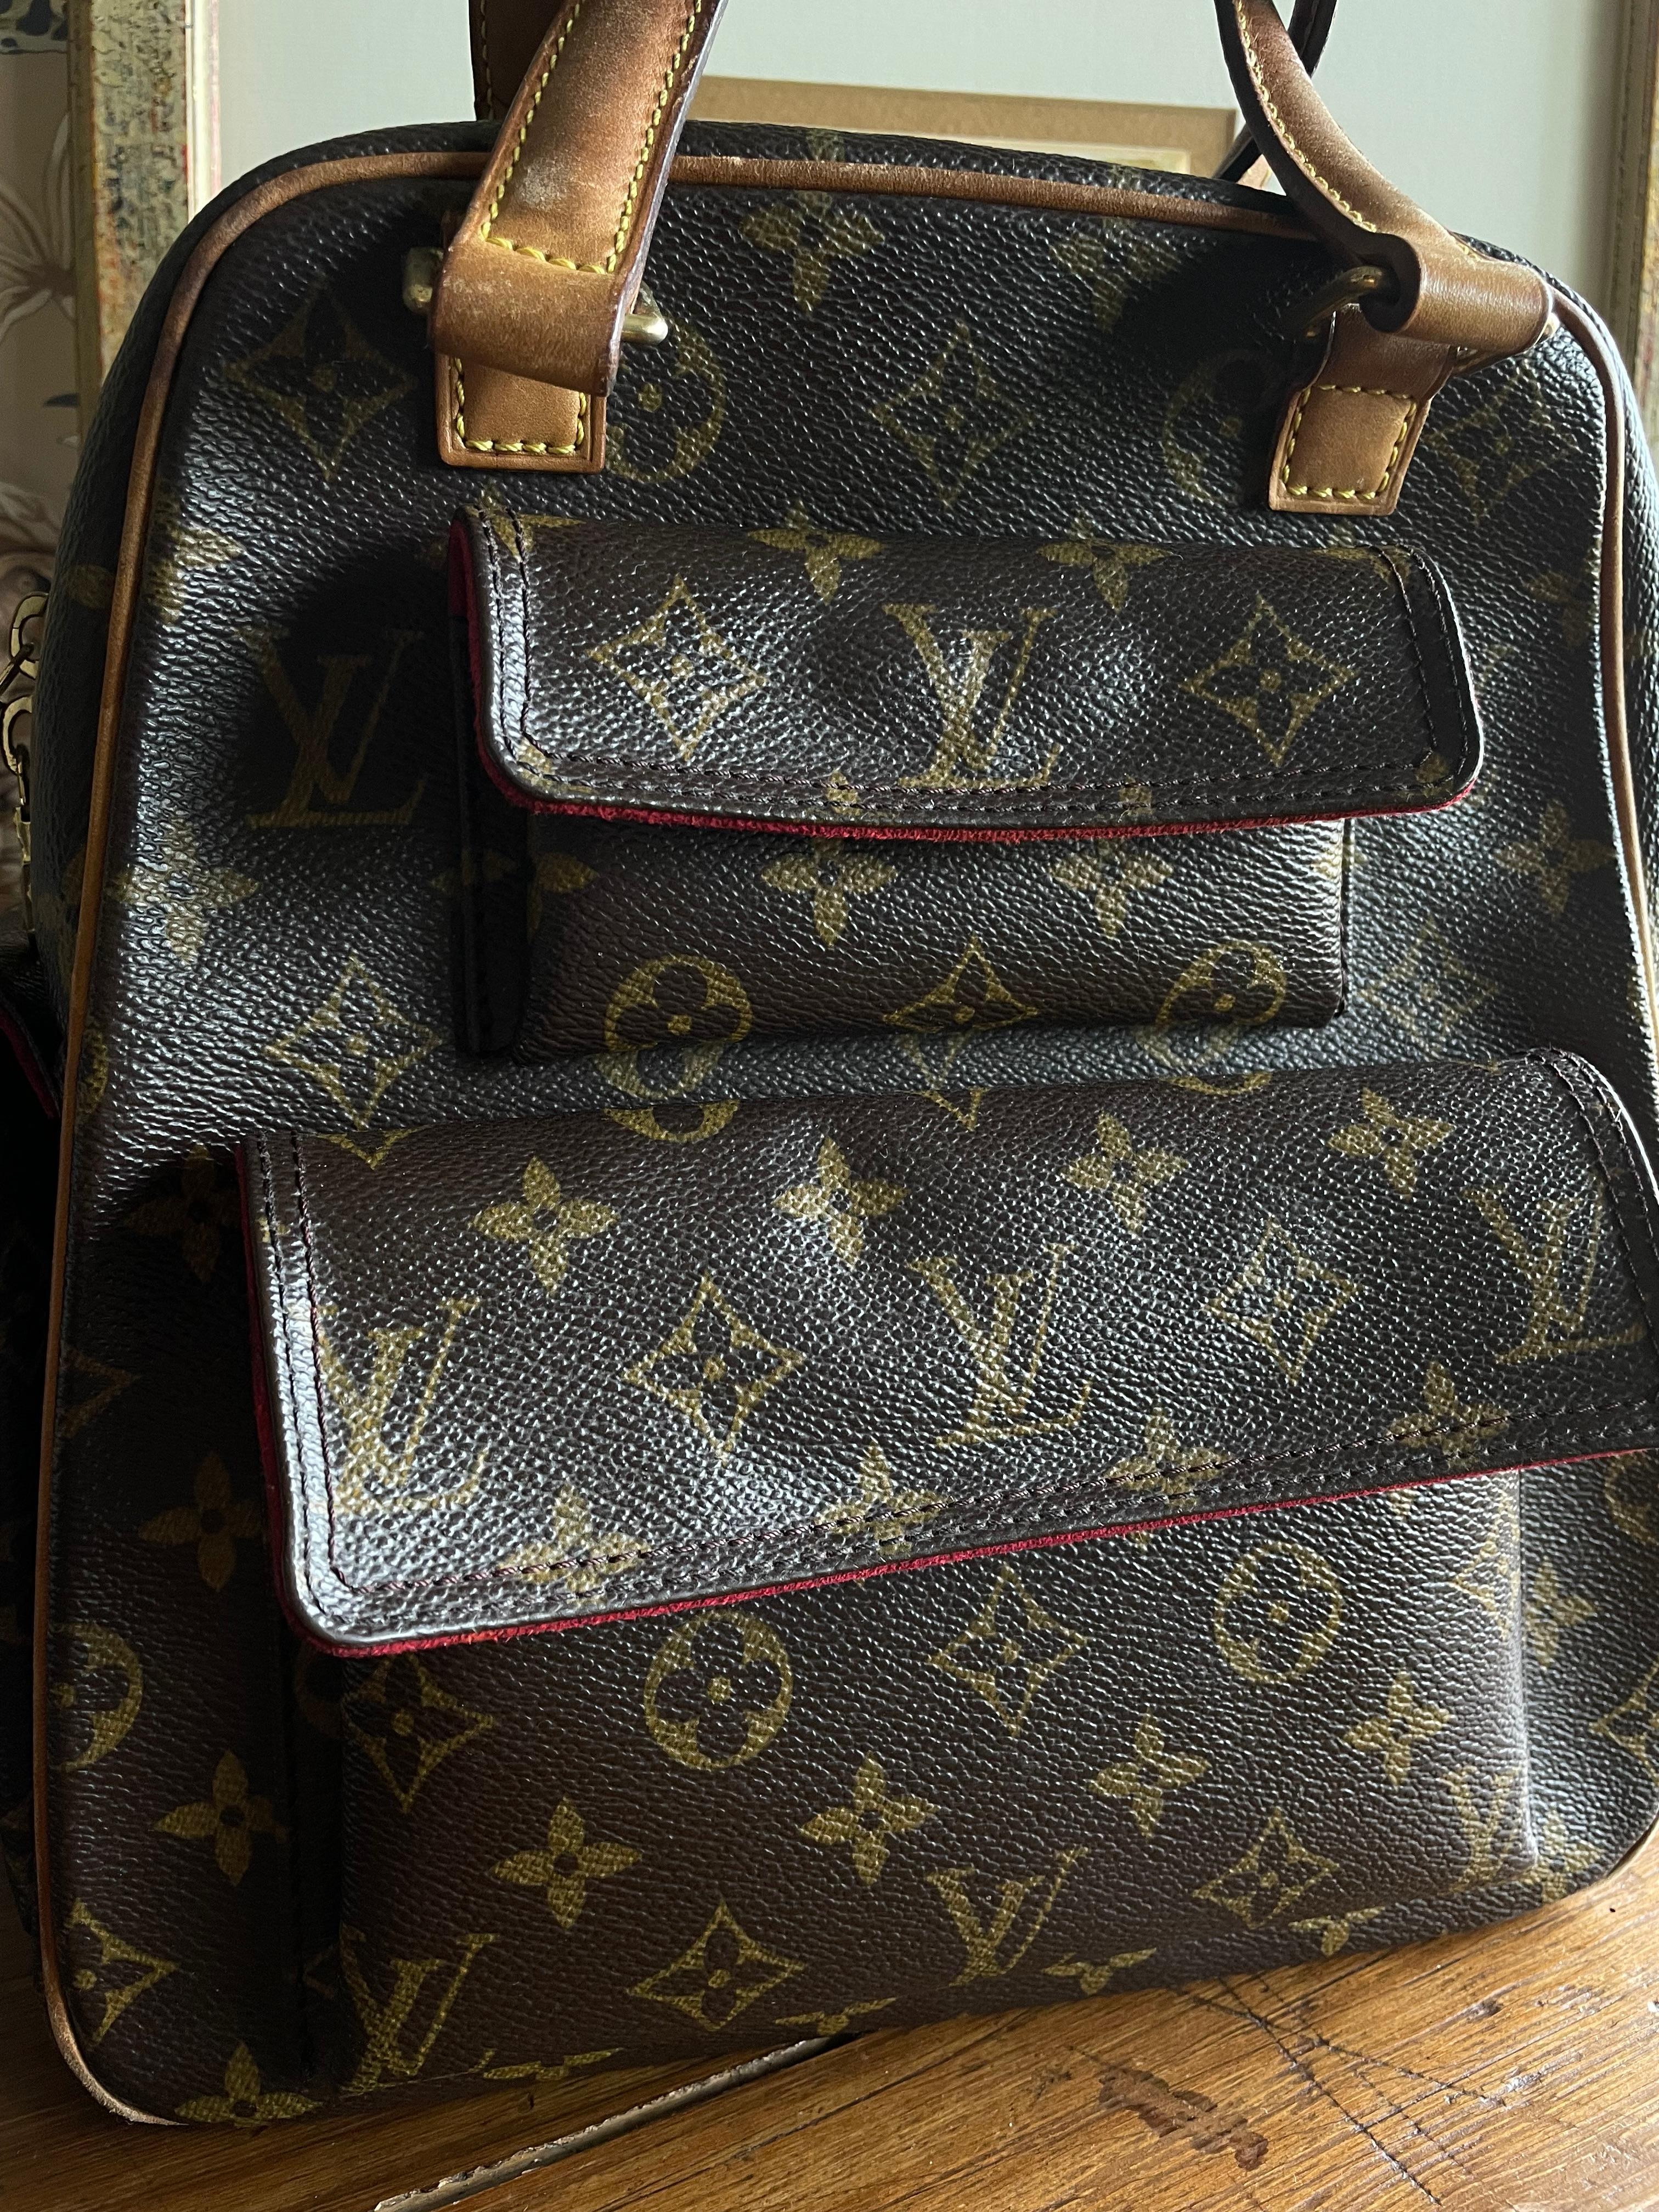 Women's or Men's Louis Vuitton Excentric Citè Limited Edition Bag